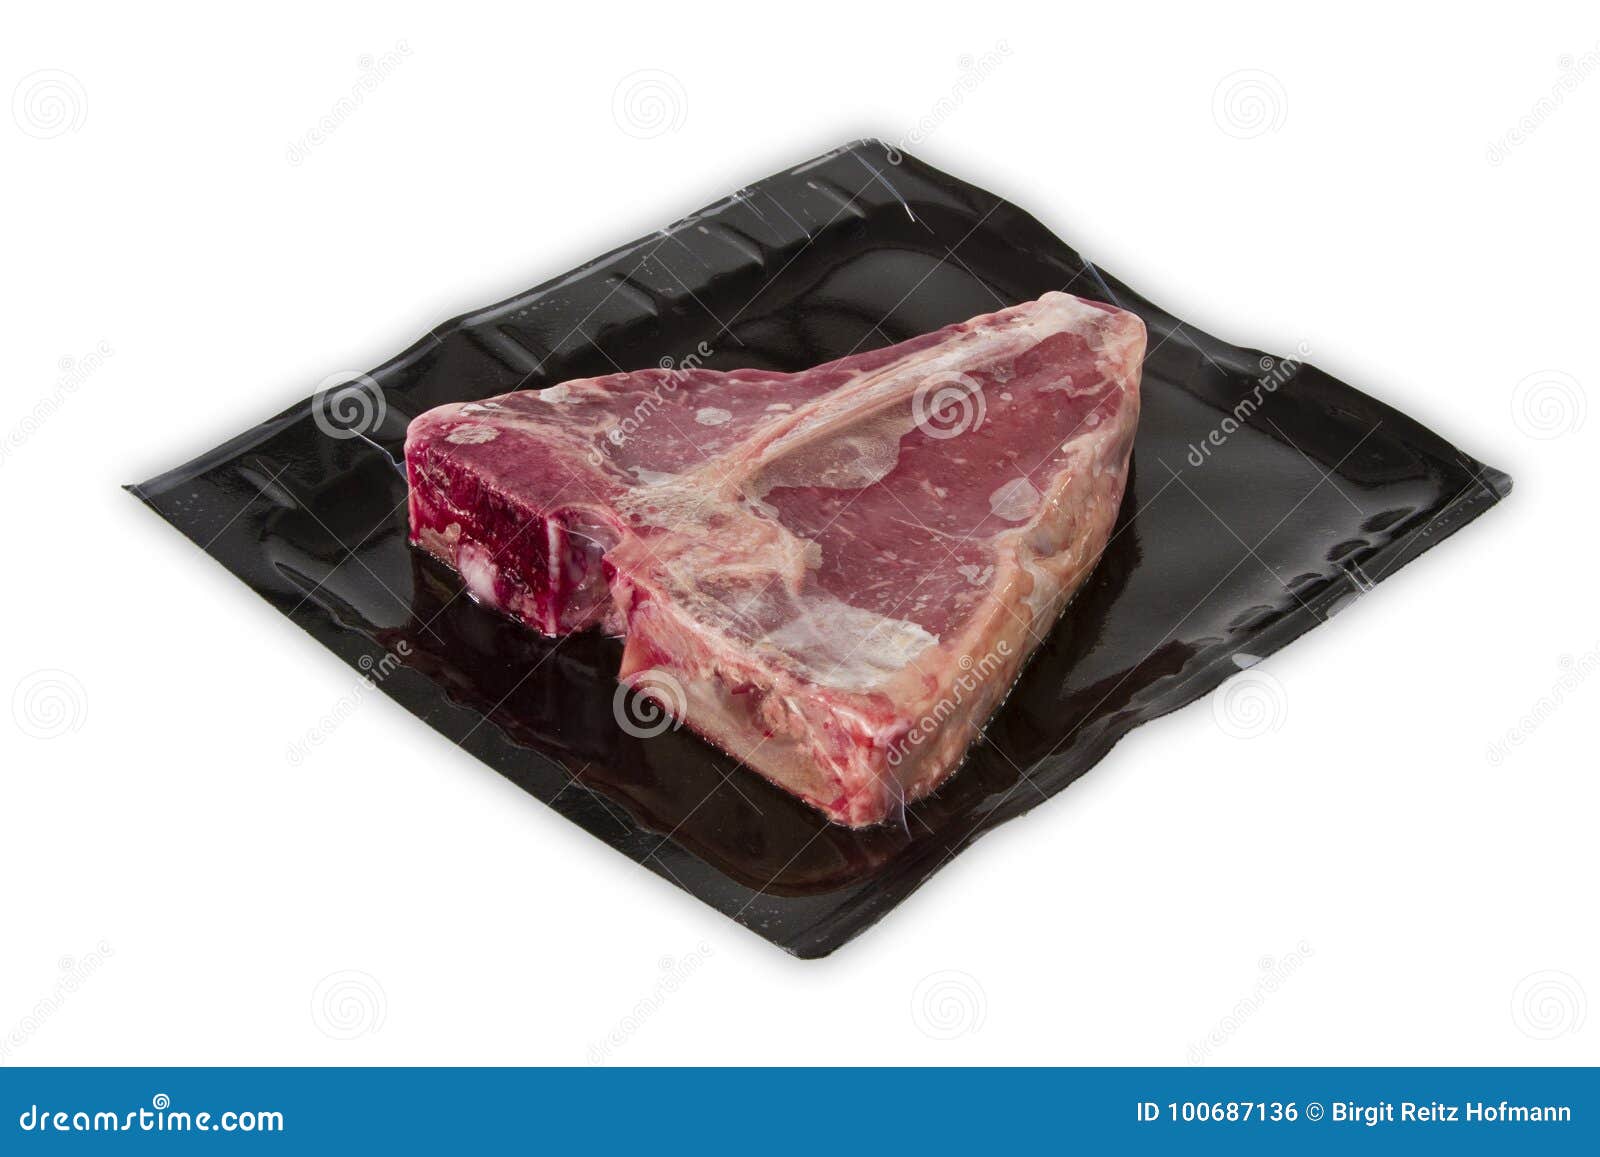 tbone steak in vacuum package